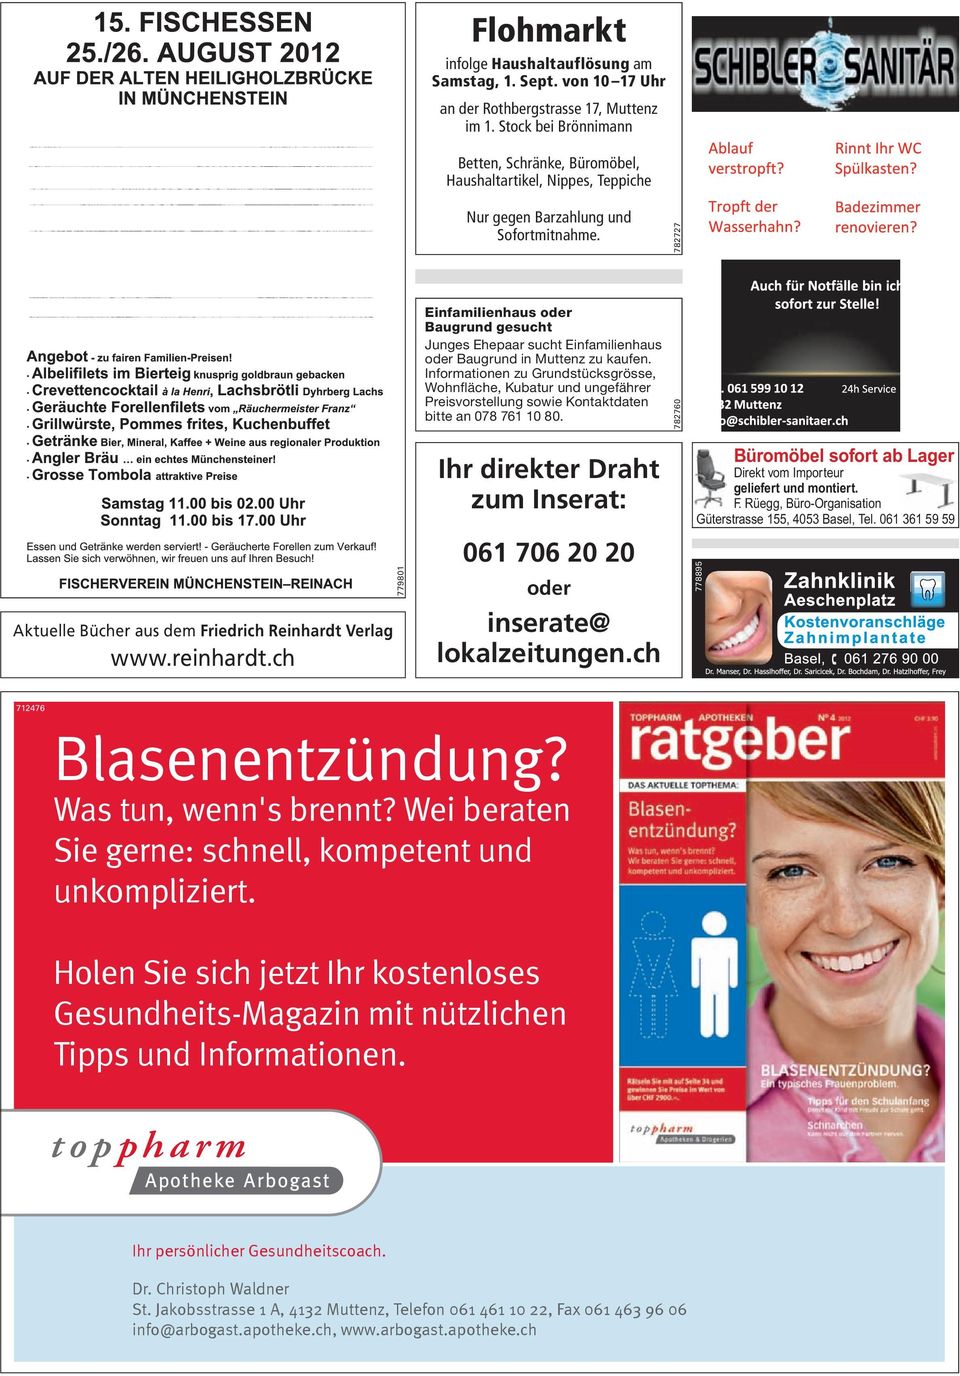 782727 Einfamilienhaus oder Baugrund gesucht Junges Ehepaar sucht Einfamilienhaus oder Baugrund in Muttenz zu kaufen.